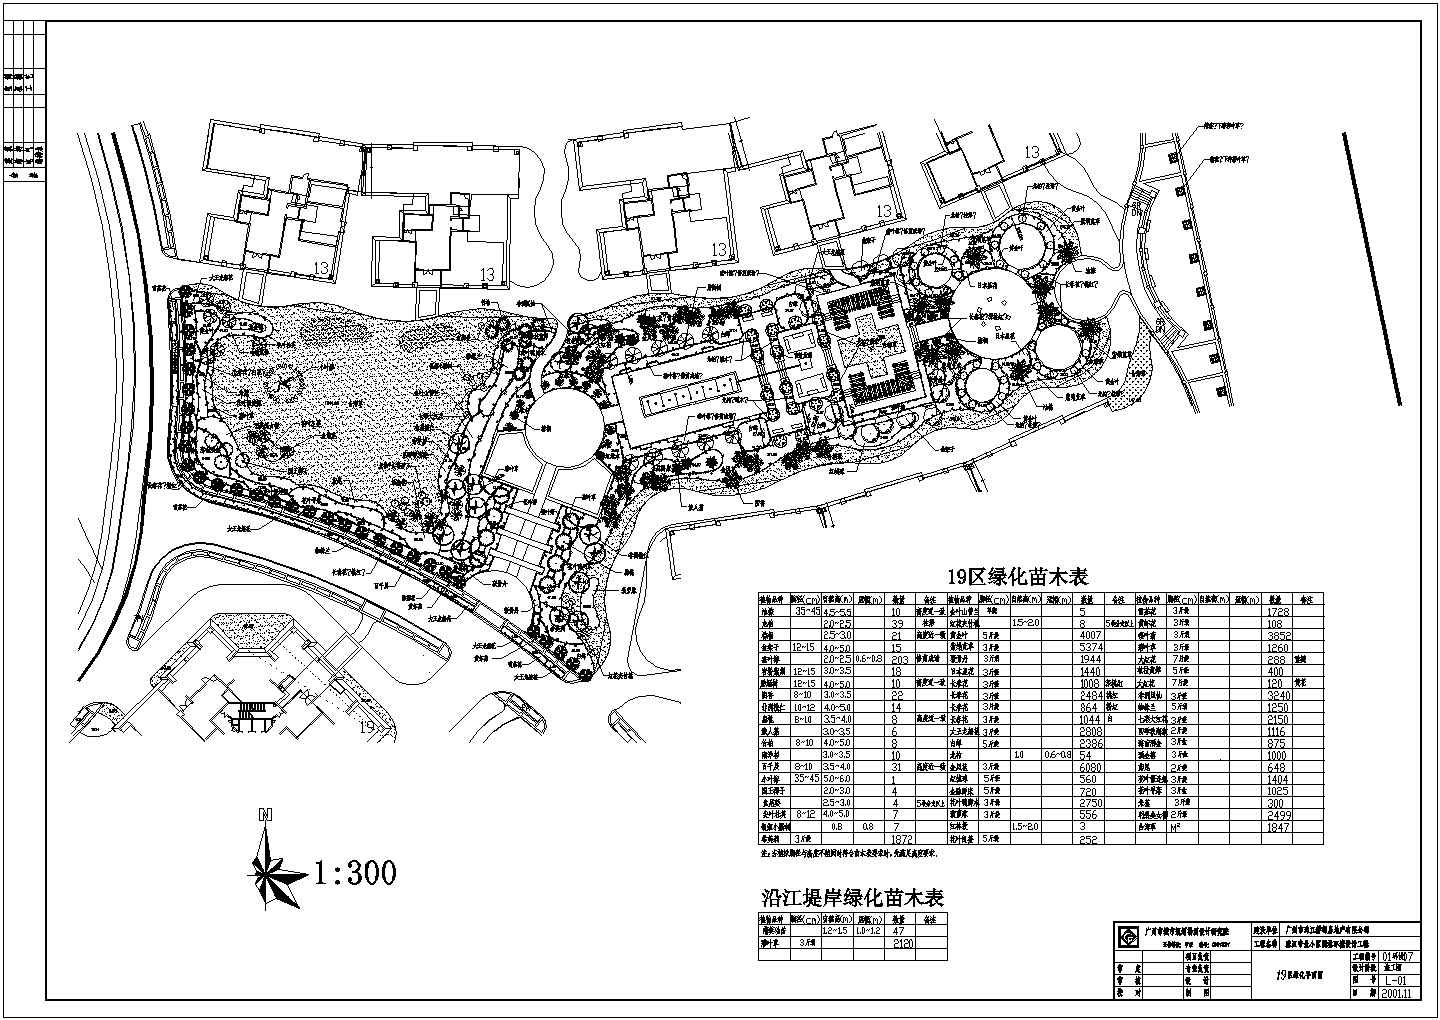 珠江帝景住宅小区园林环境设计平面布置图